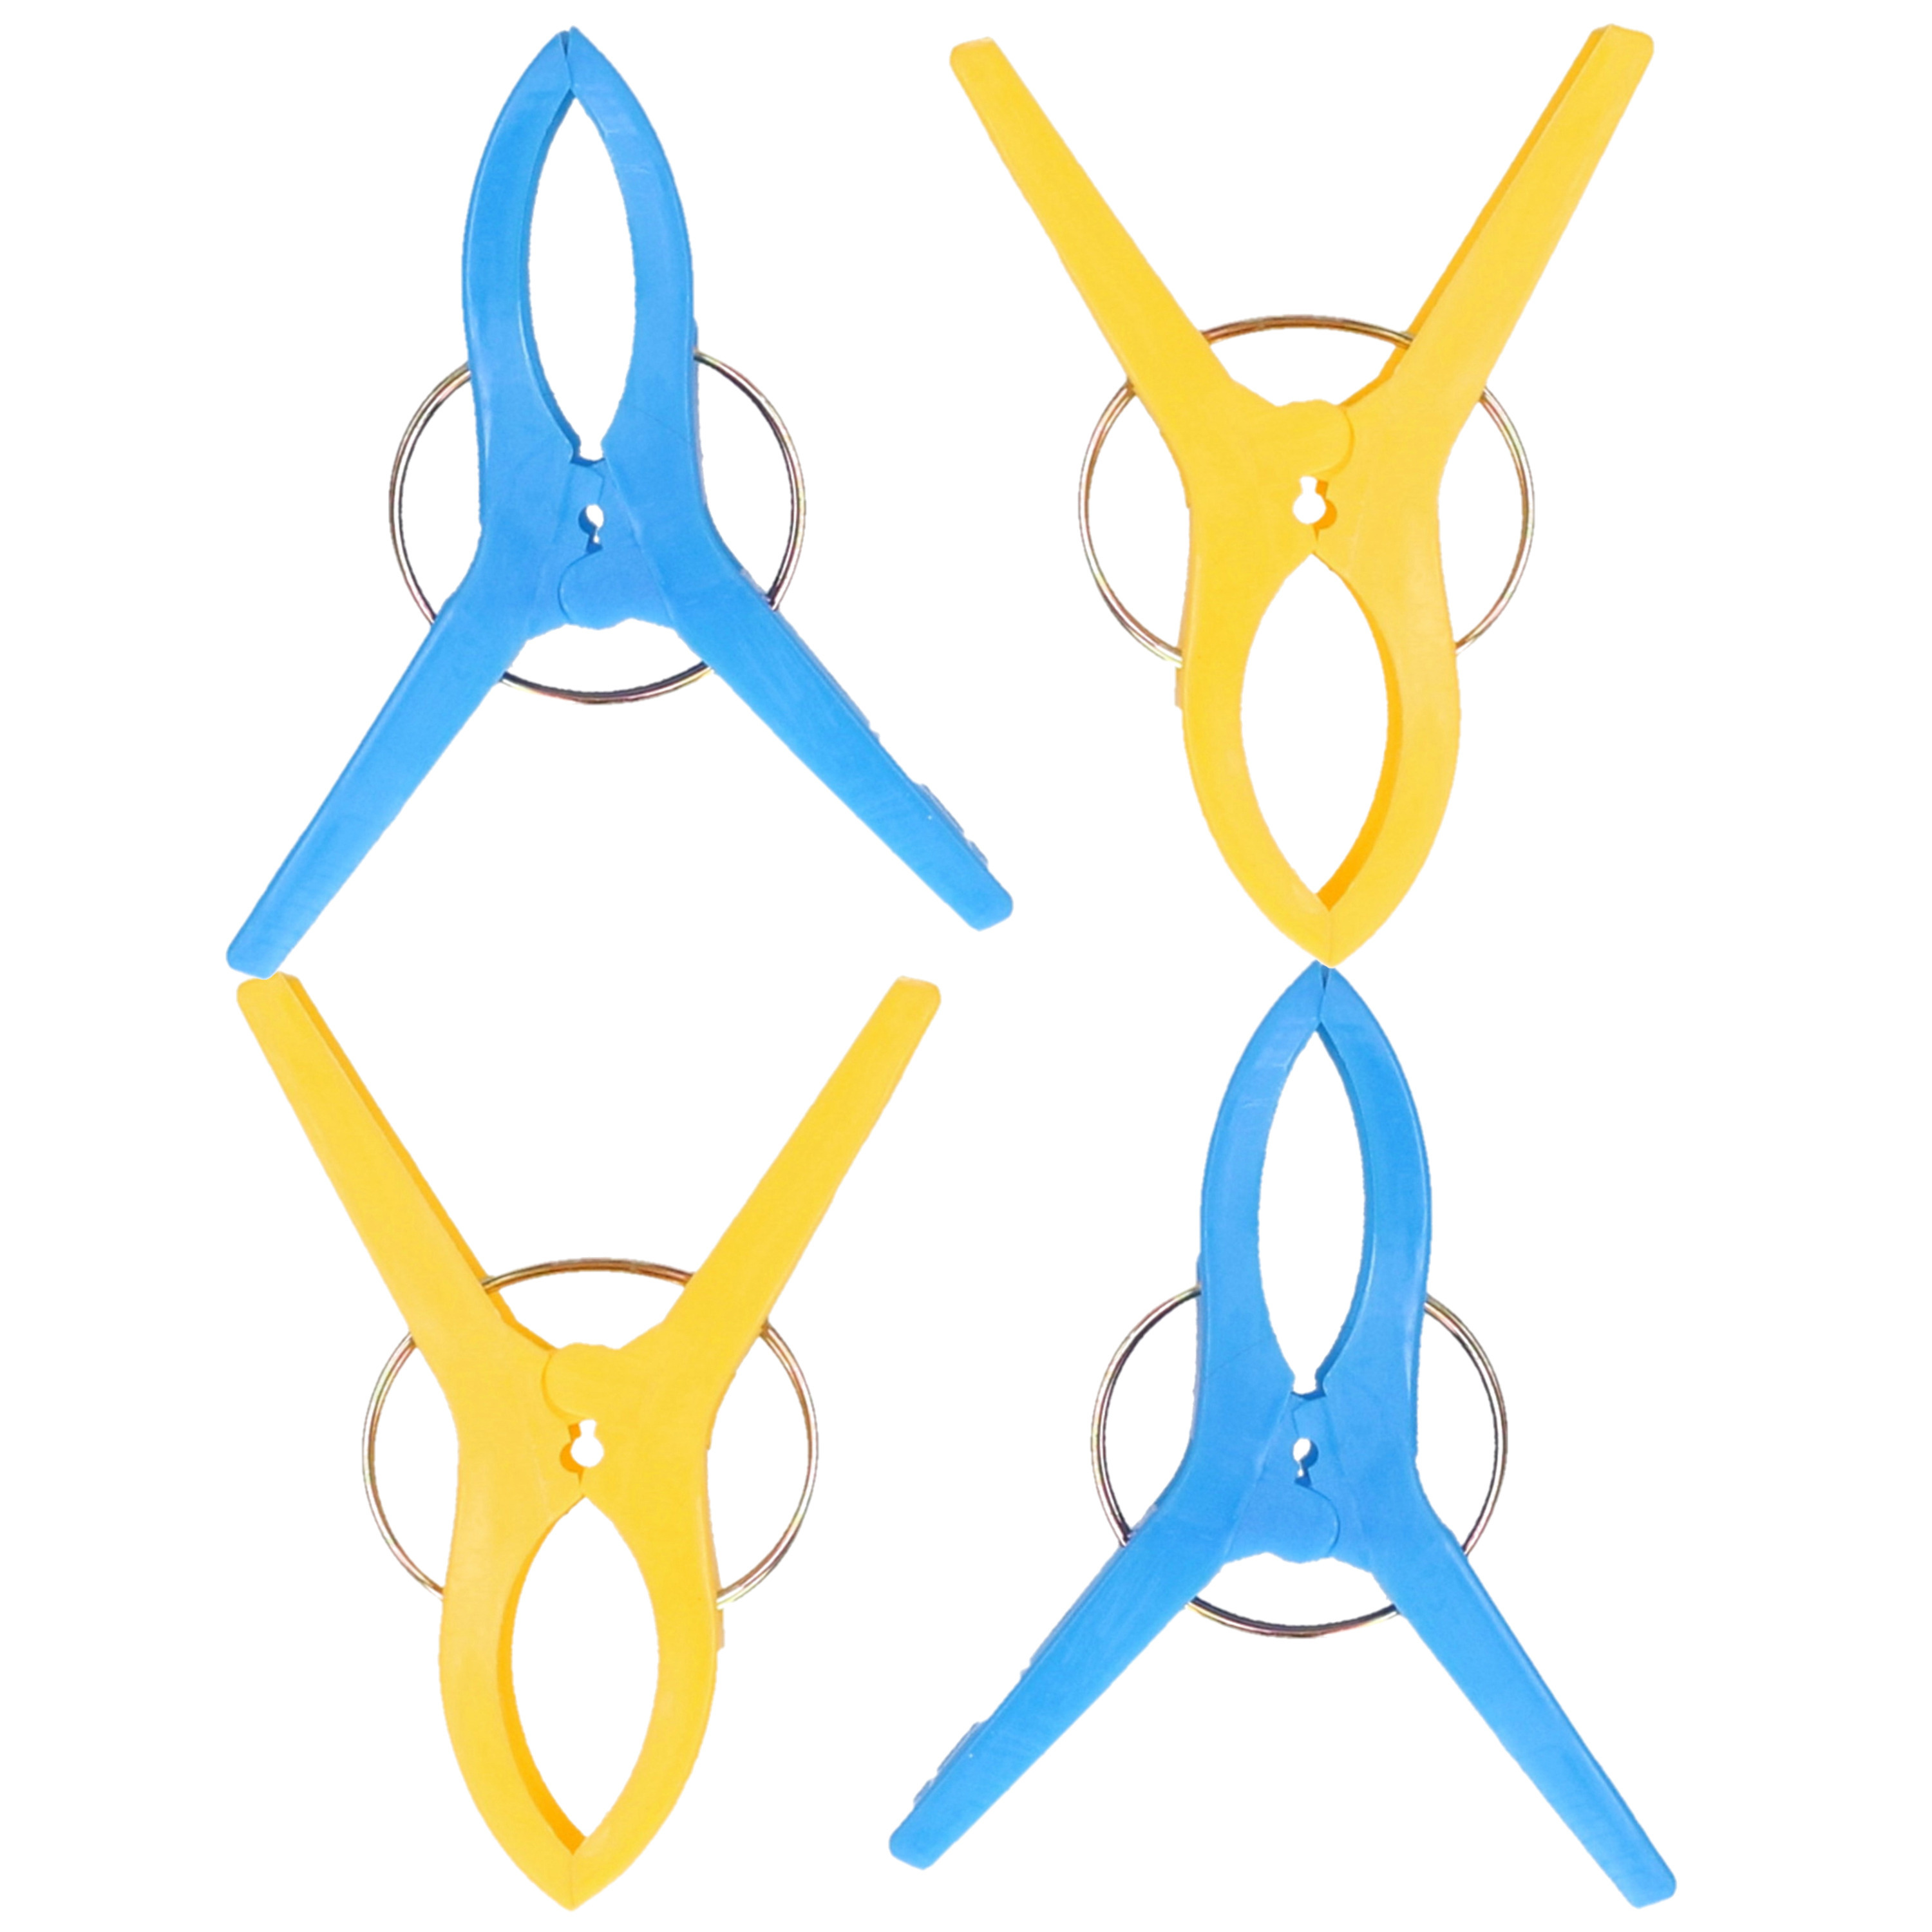 Jedermann Handdoekknijpers XL 6x blauw-geel kunststof 12 cm